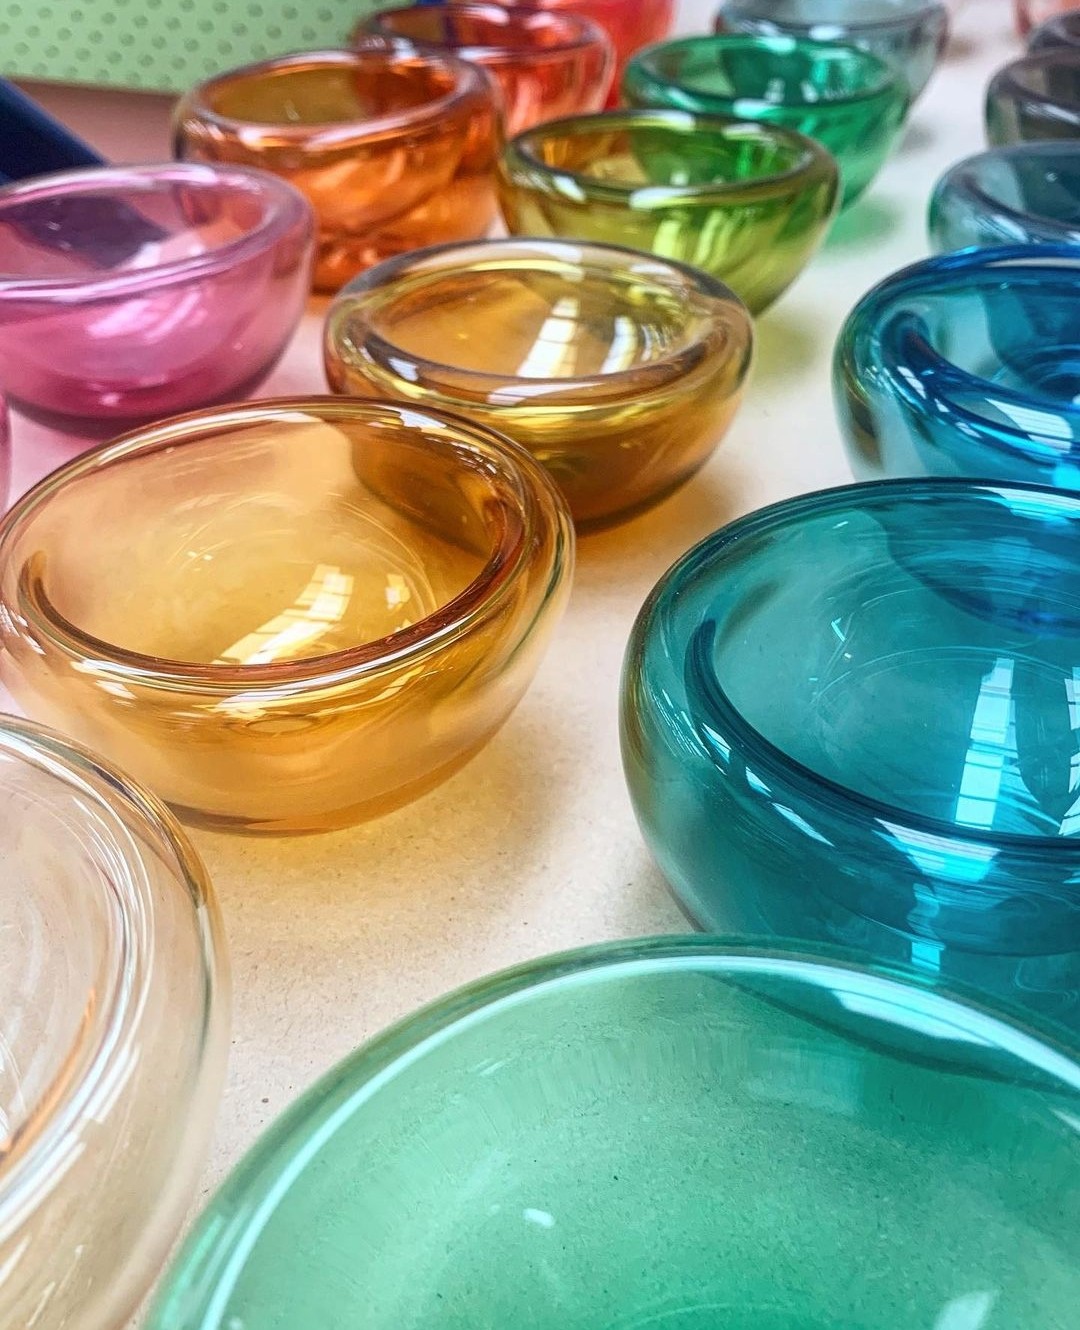 Rainbow glass bowls by Amanda Dziedzic